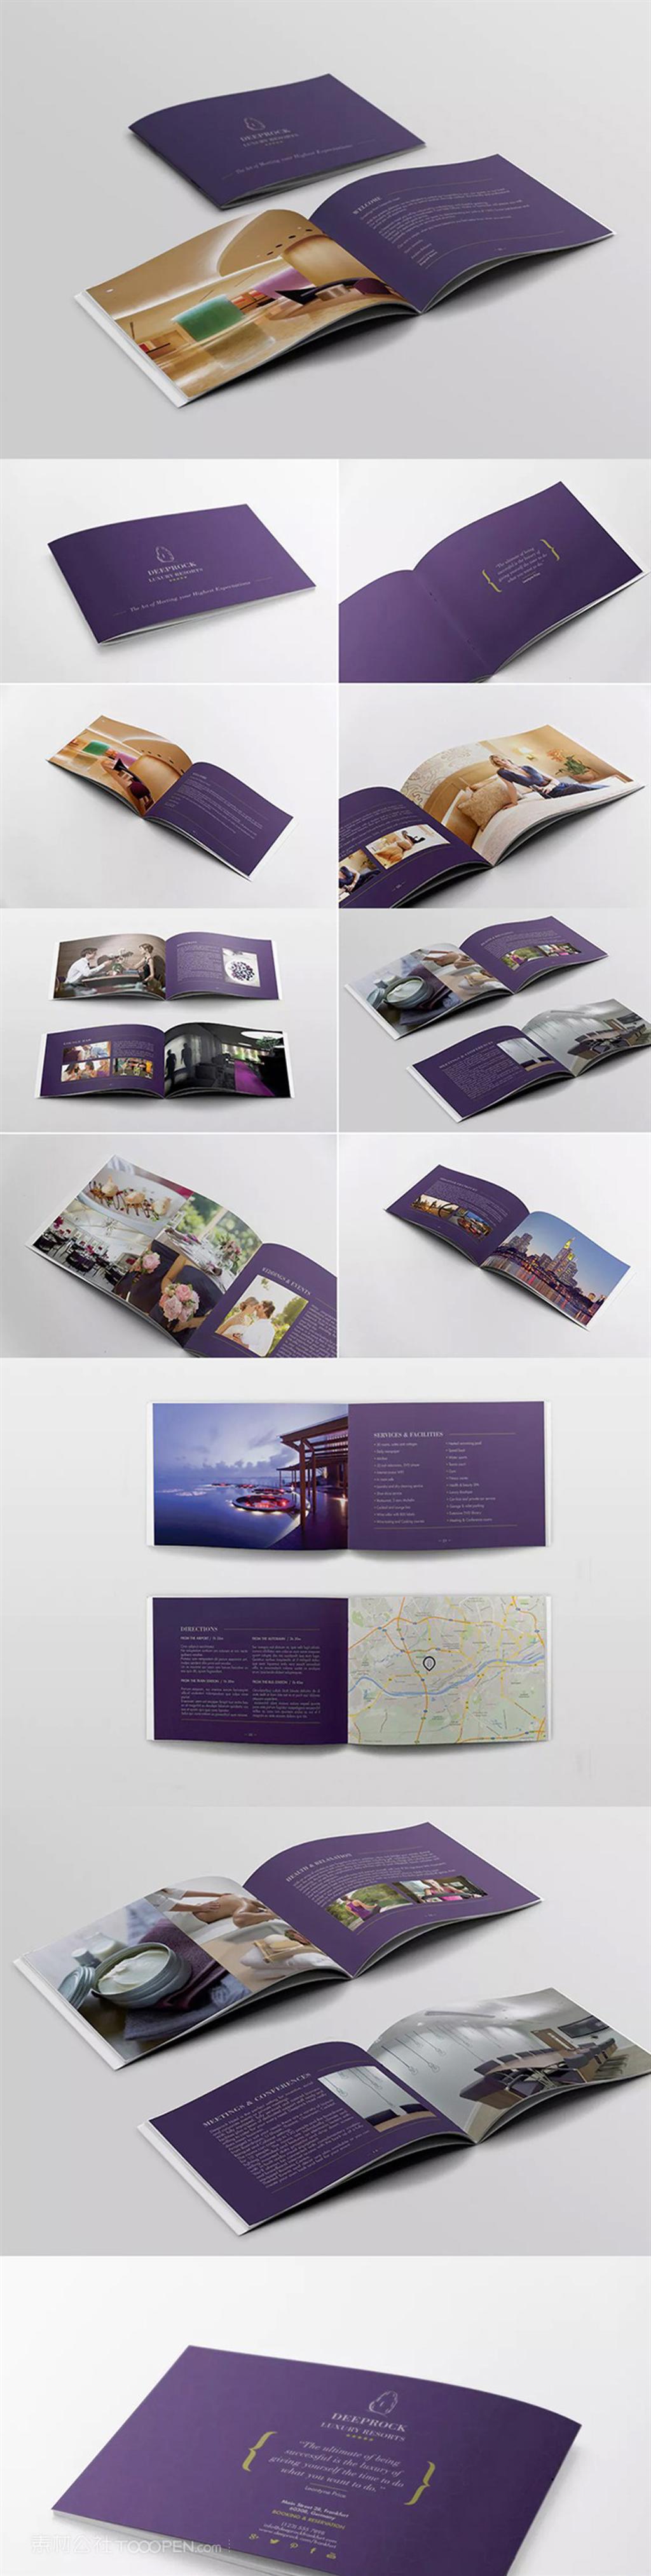 紫色婚礼ID画册摄影毕业作品集产品宣传杂志写真排版indesign格式设计素材